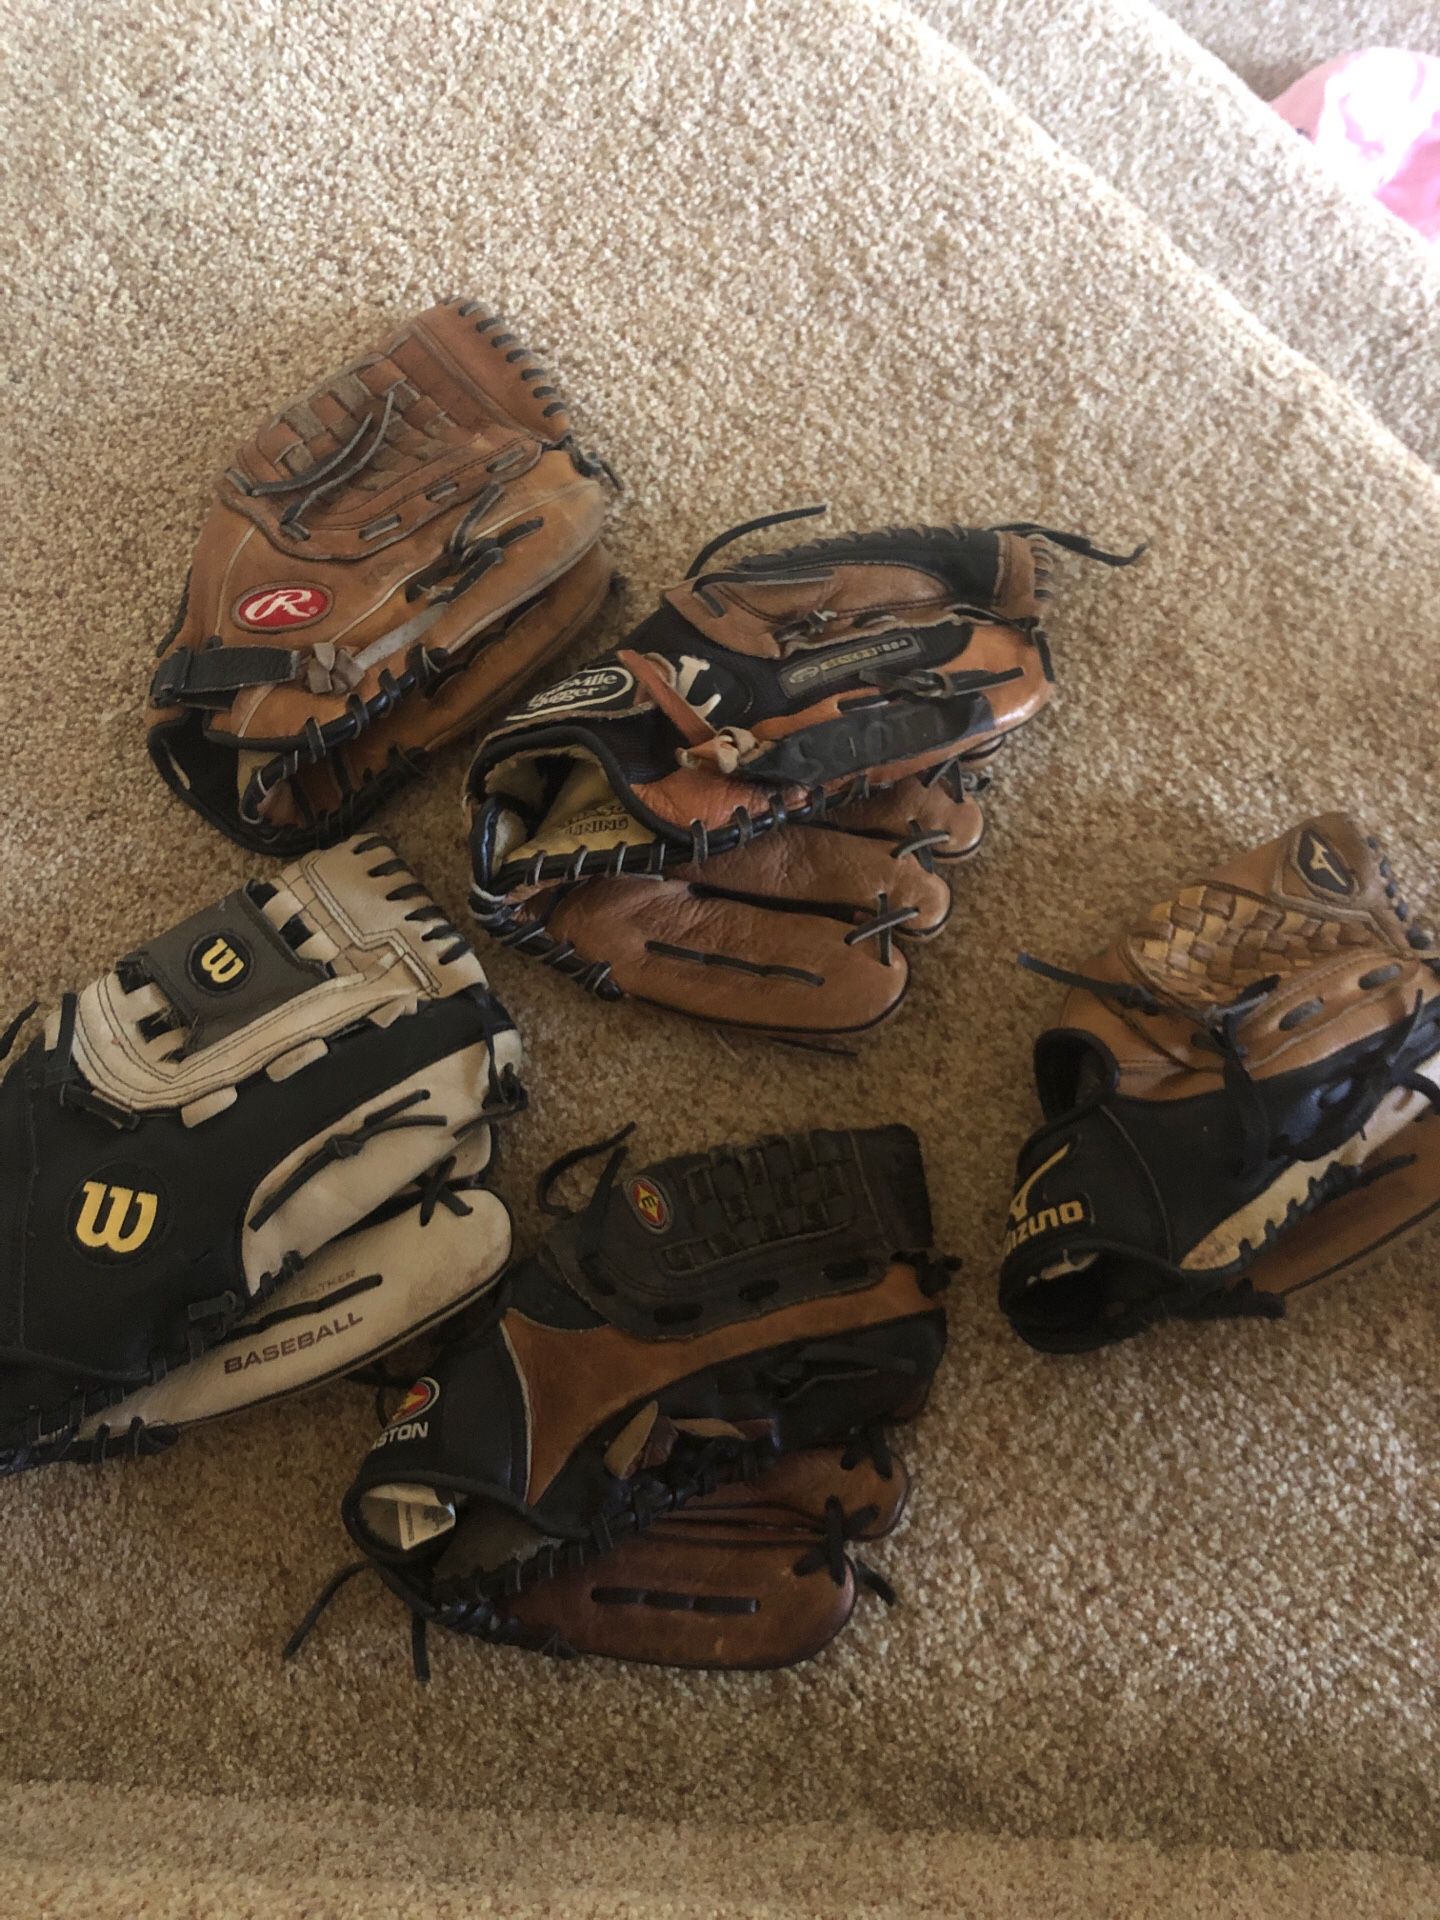 Baseball gloves (left hand)